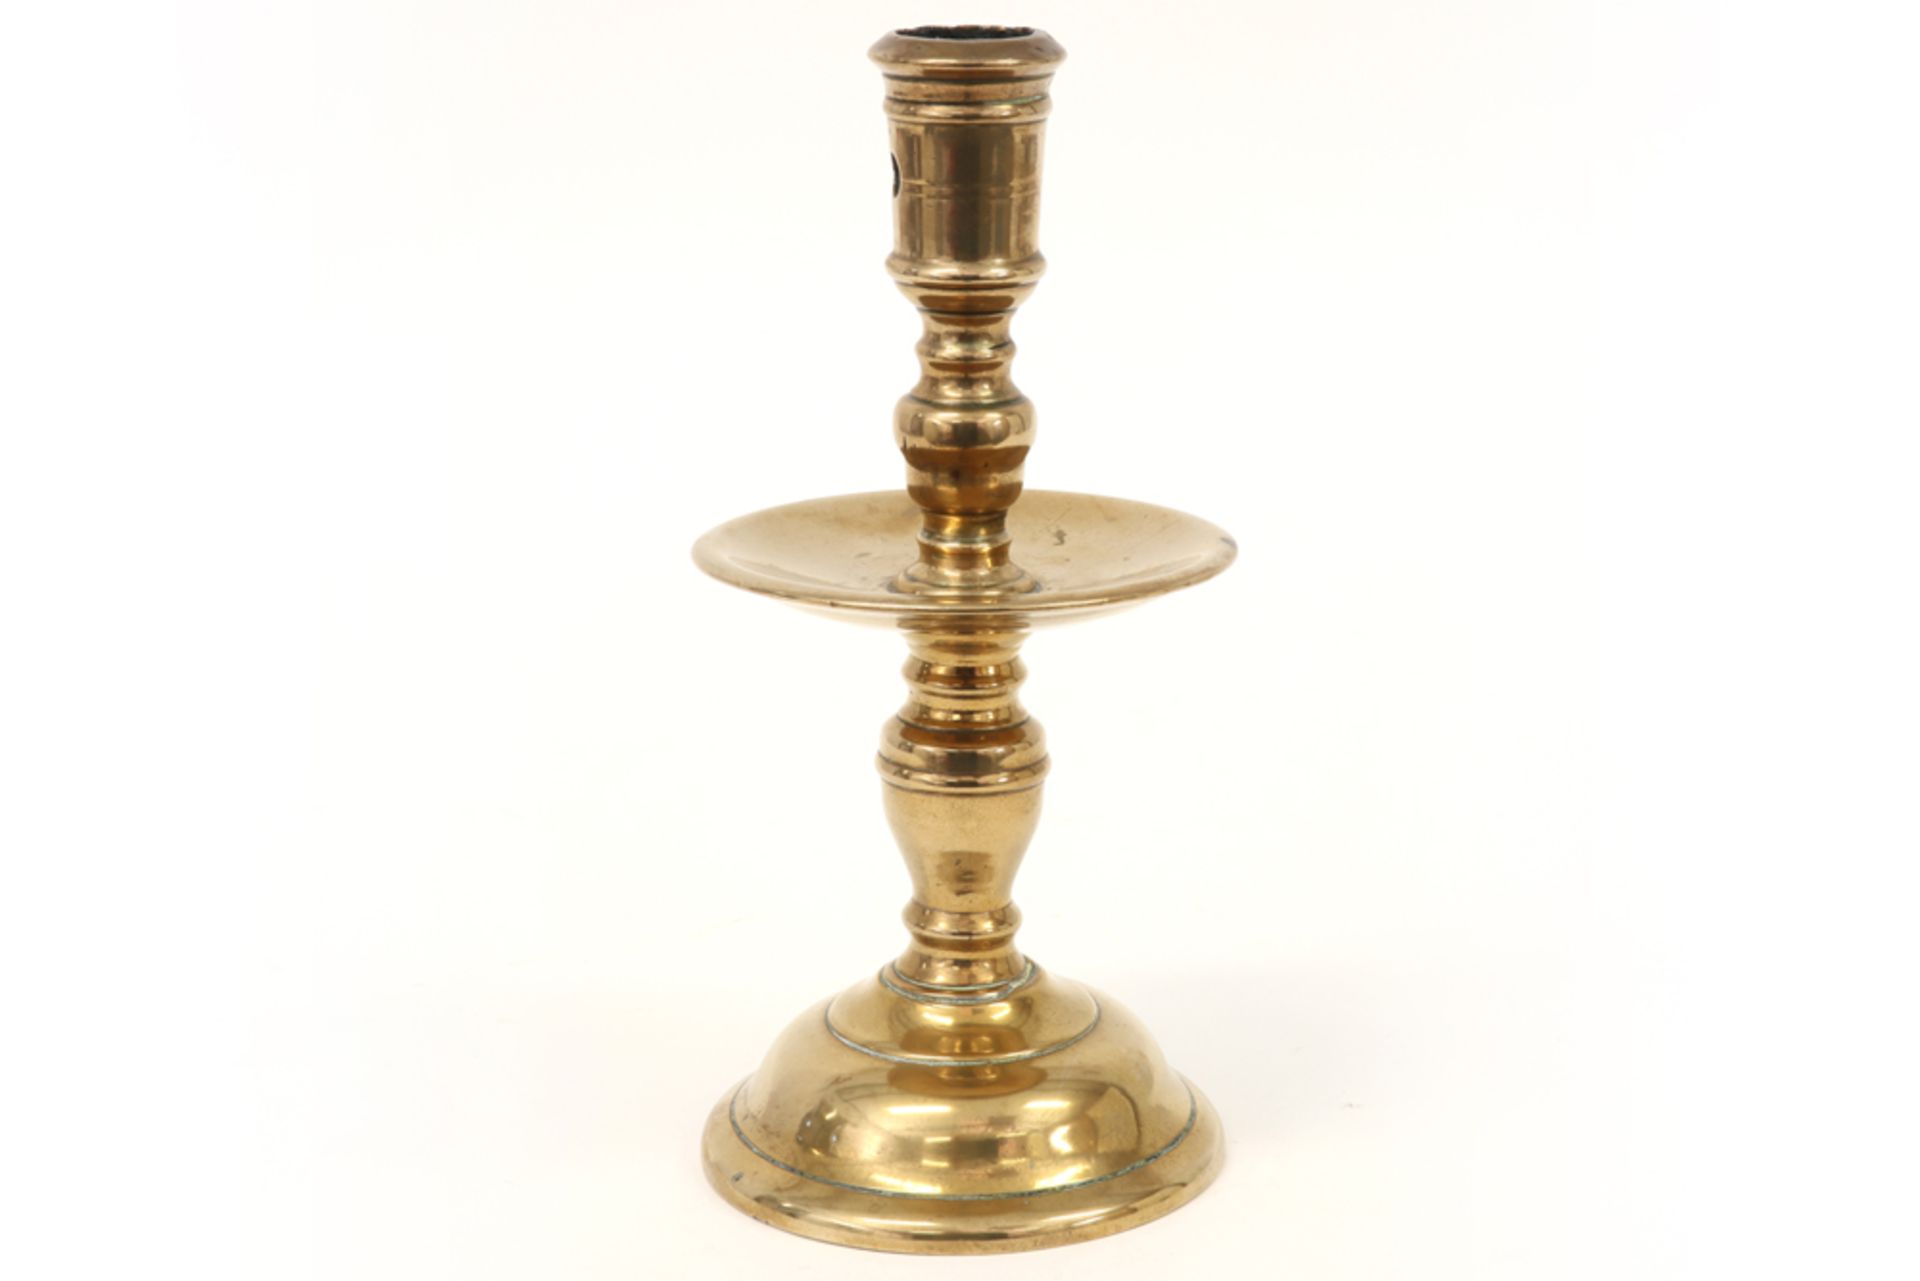 17th Cent. candlestick in bronze||Zeventiende eeuwse kandelaar met schijfvormige druipschaal in